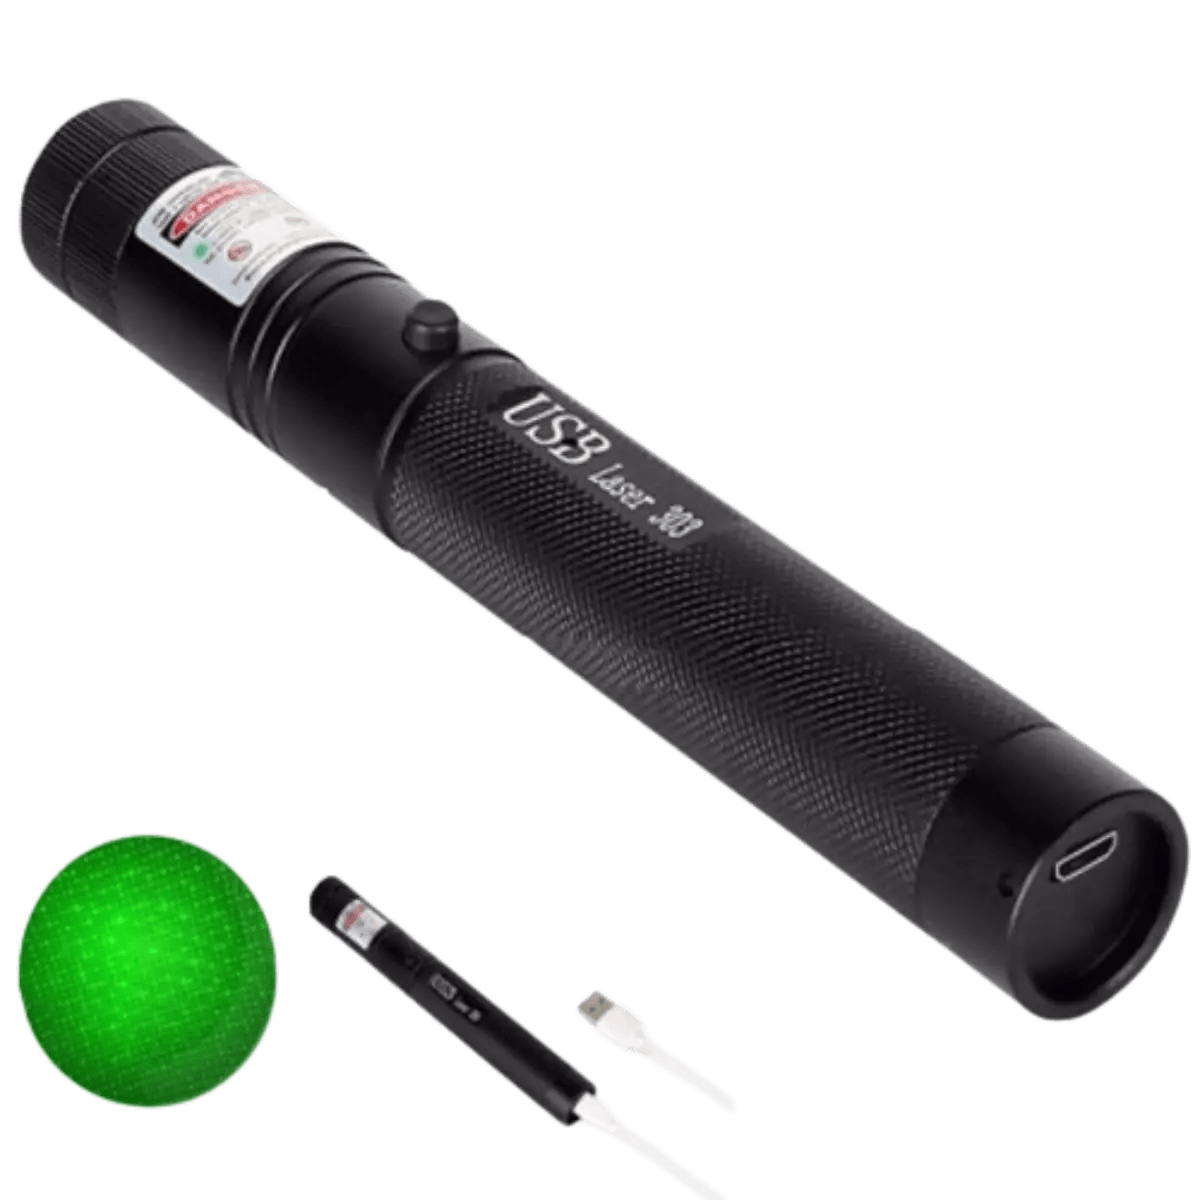 Puissant pointeur laser vert - 303 Torche laser verte haute puissance  10000m Point vert dispositif de mise au point réglable pour la chasse